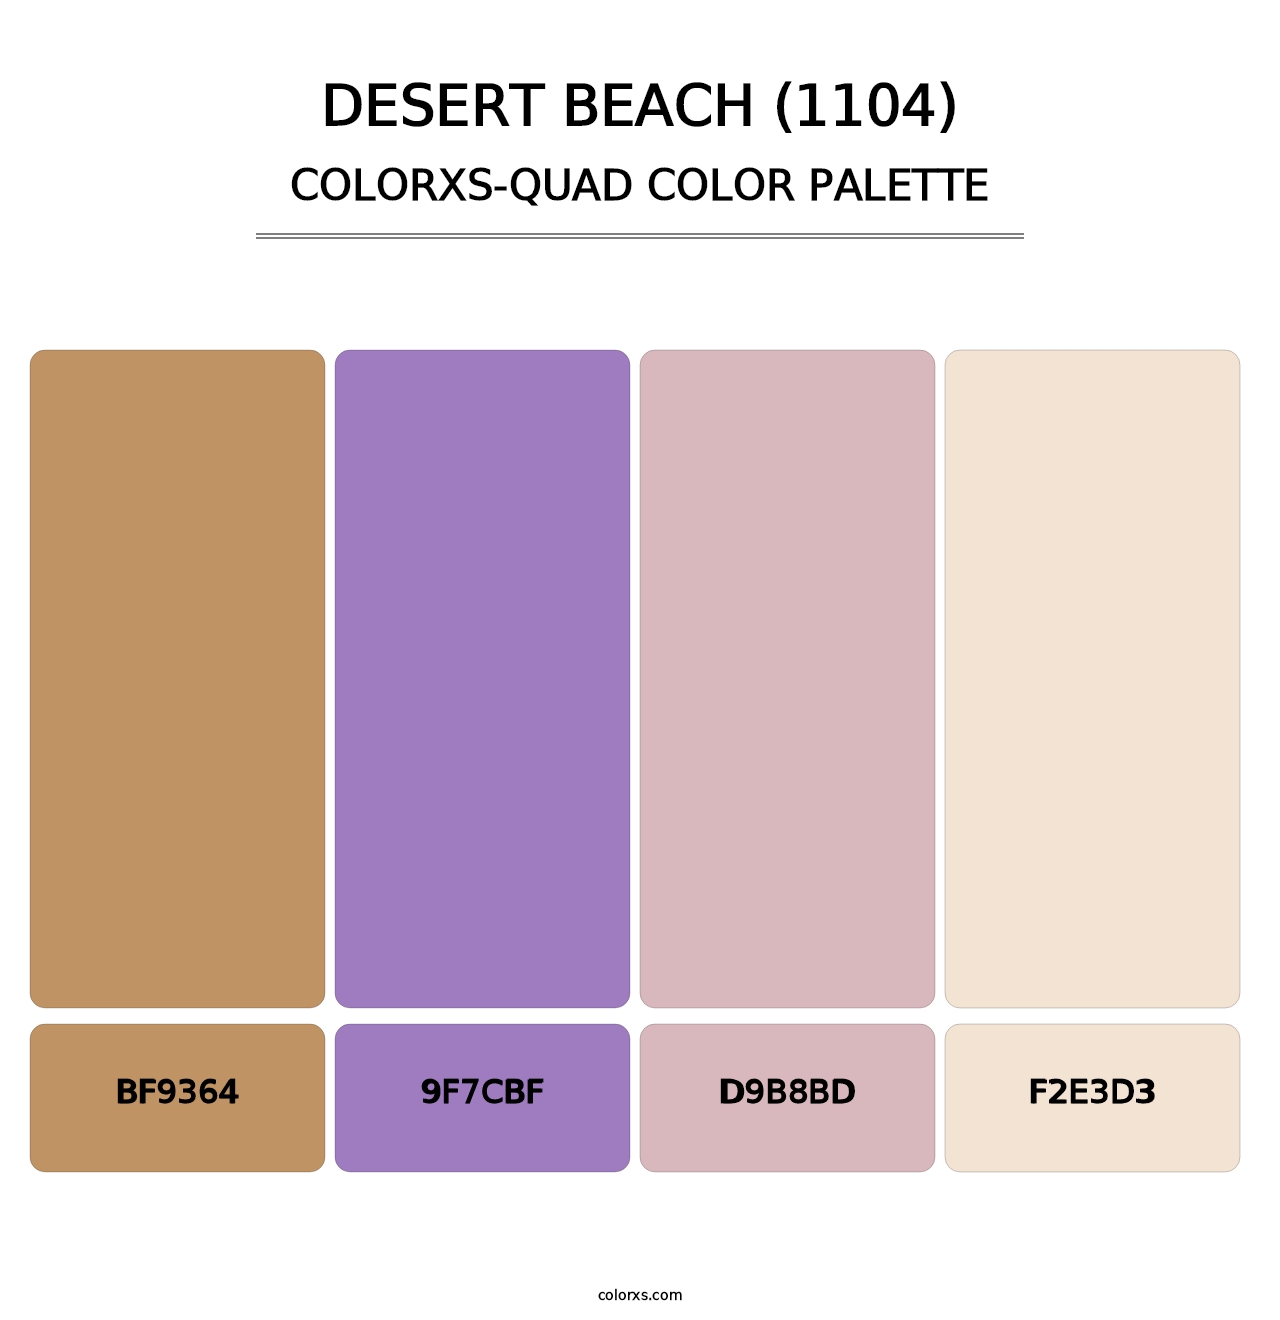 Desert Beach (1104) - Colorxs Quad Palette